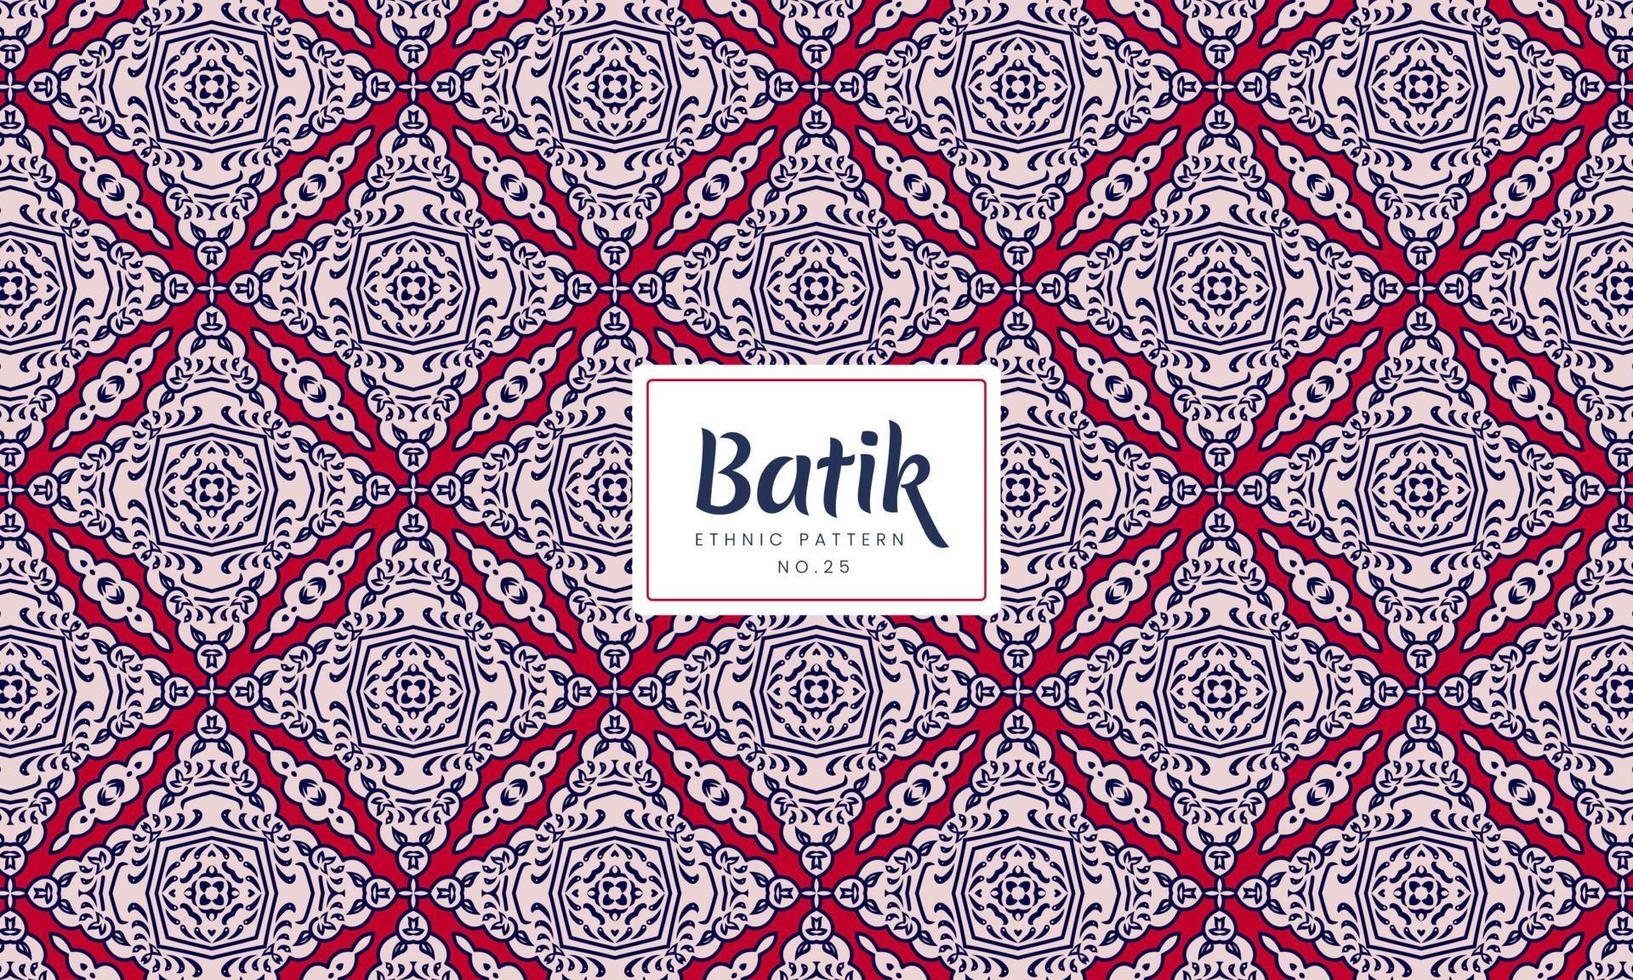 batik indonesio kawung tradicional decorativas patrones florales vectores rojas